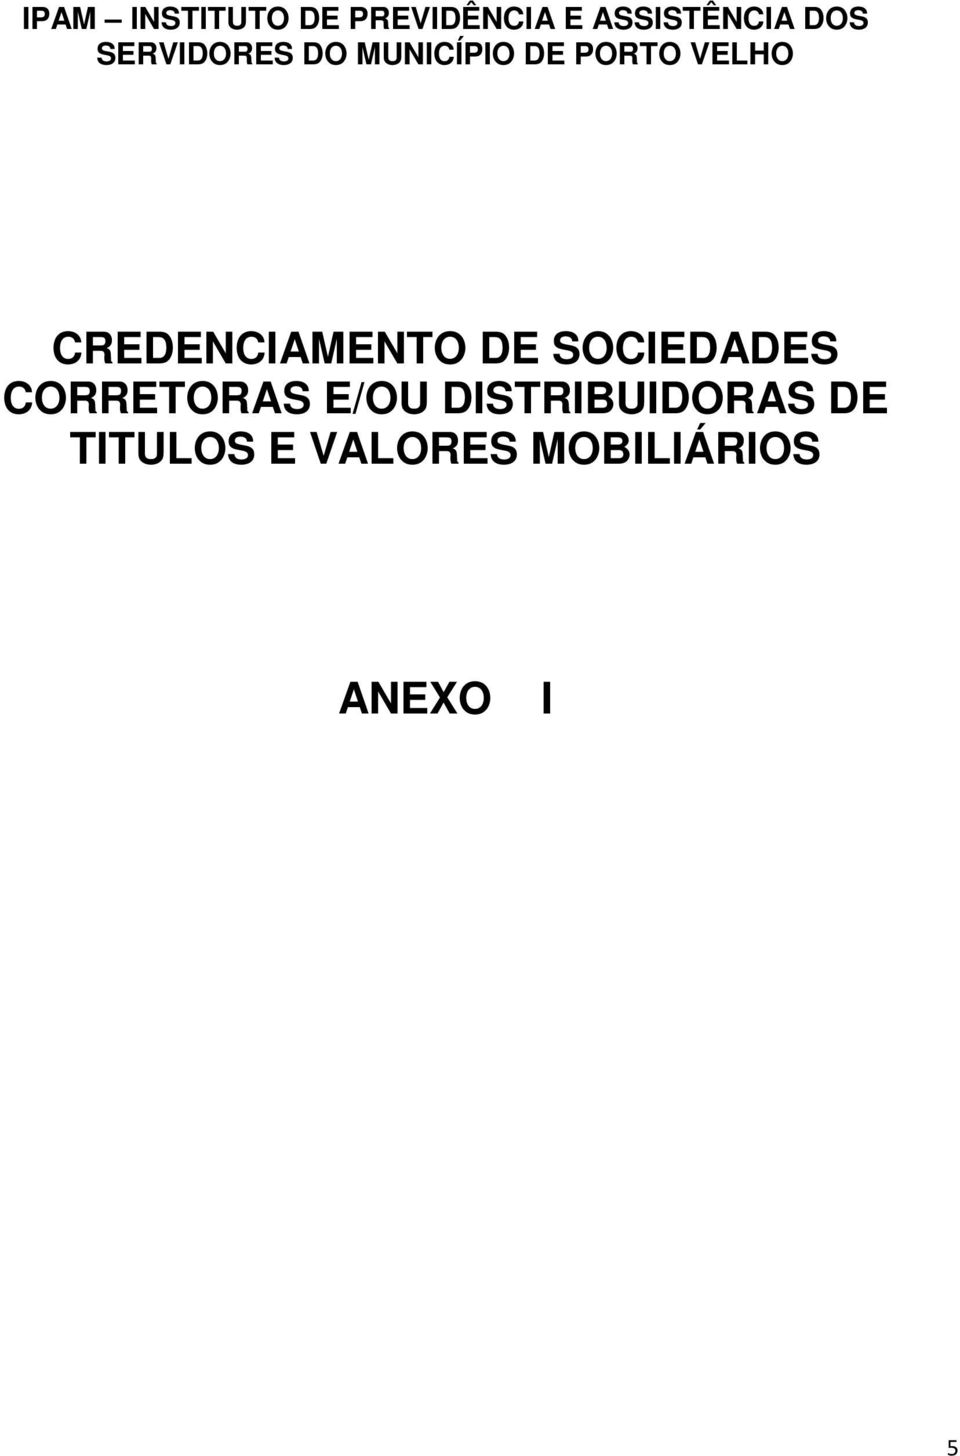 CREDENCIAMENTO DE SOCIEDADES CORRETORAS E/OU